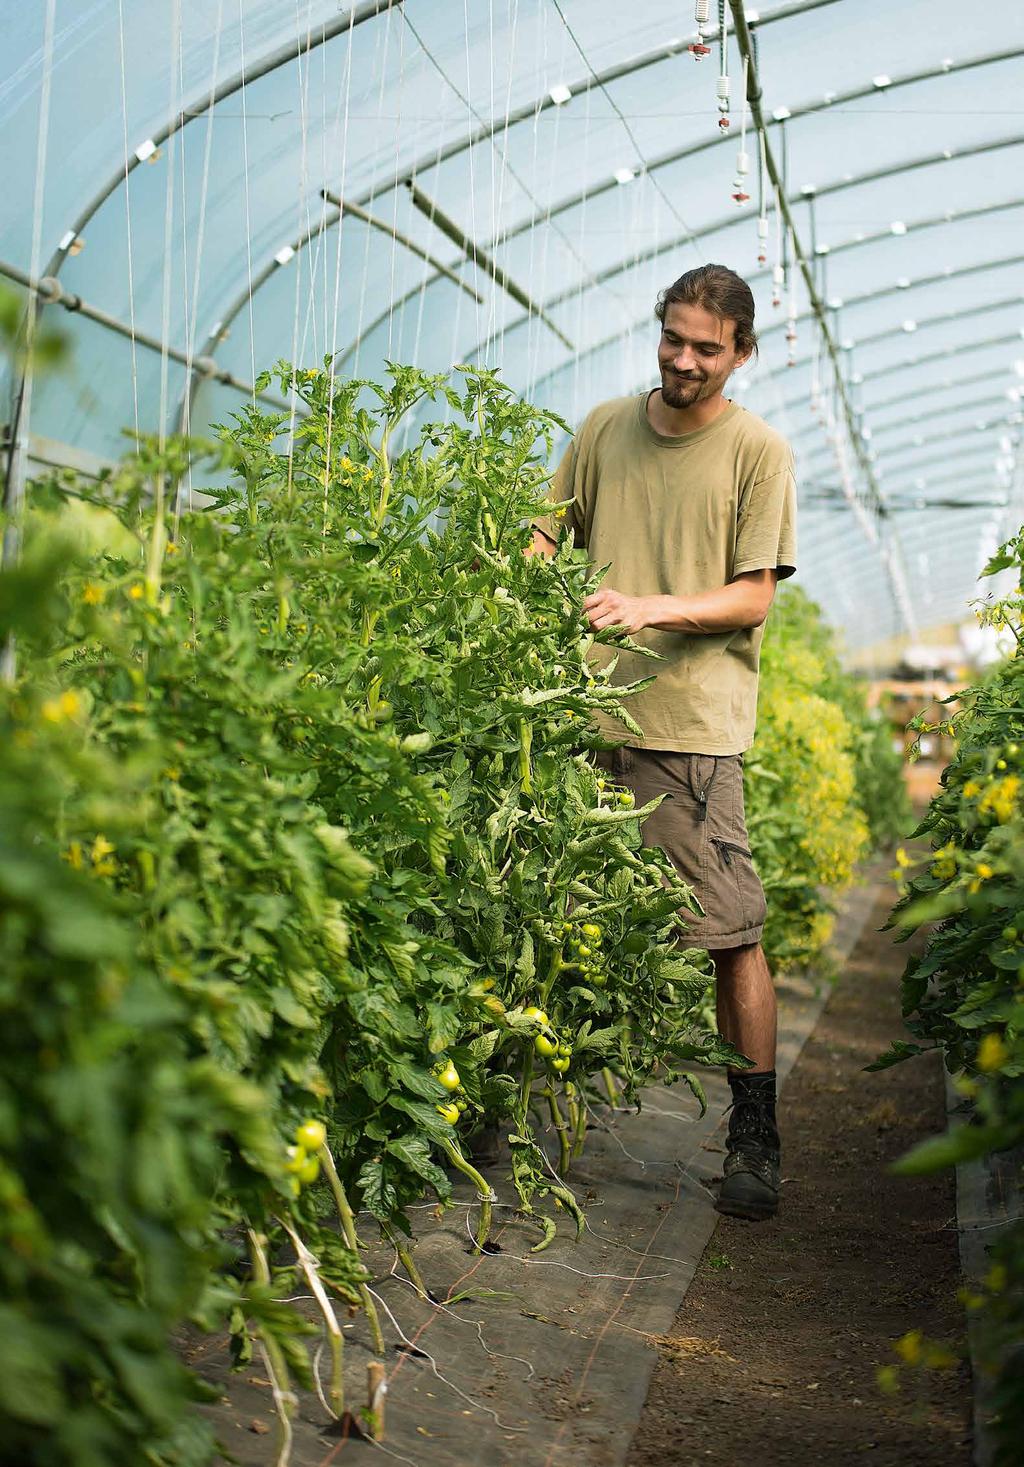 Student Umweltingenieurwesen Regionaler Gemüseanbau steht für einen nachhaltigen Umgang mit Lebensmitteln.